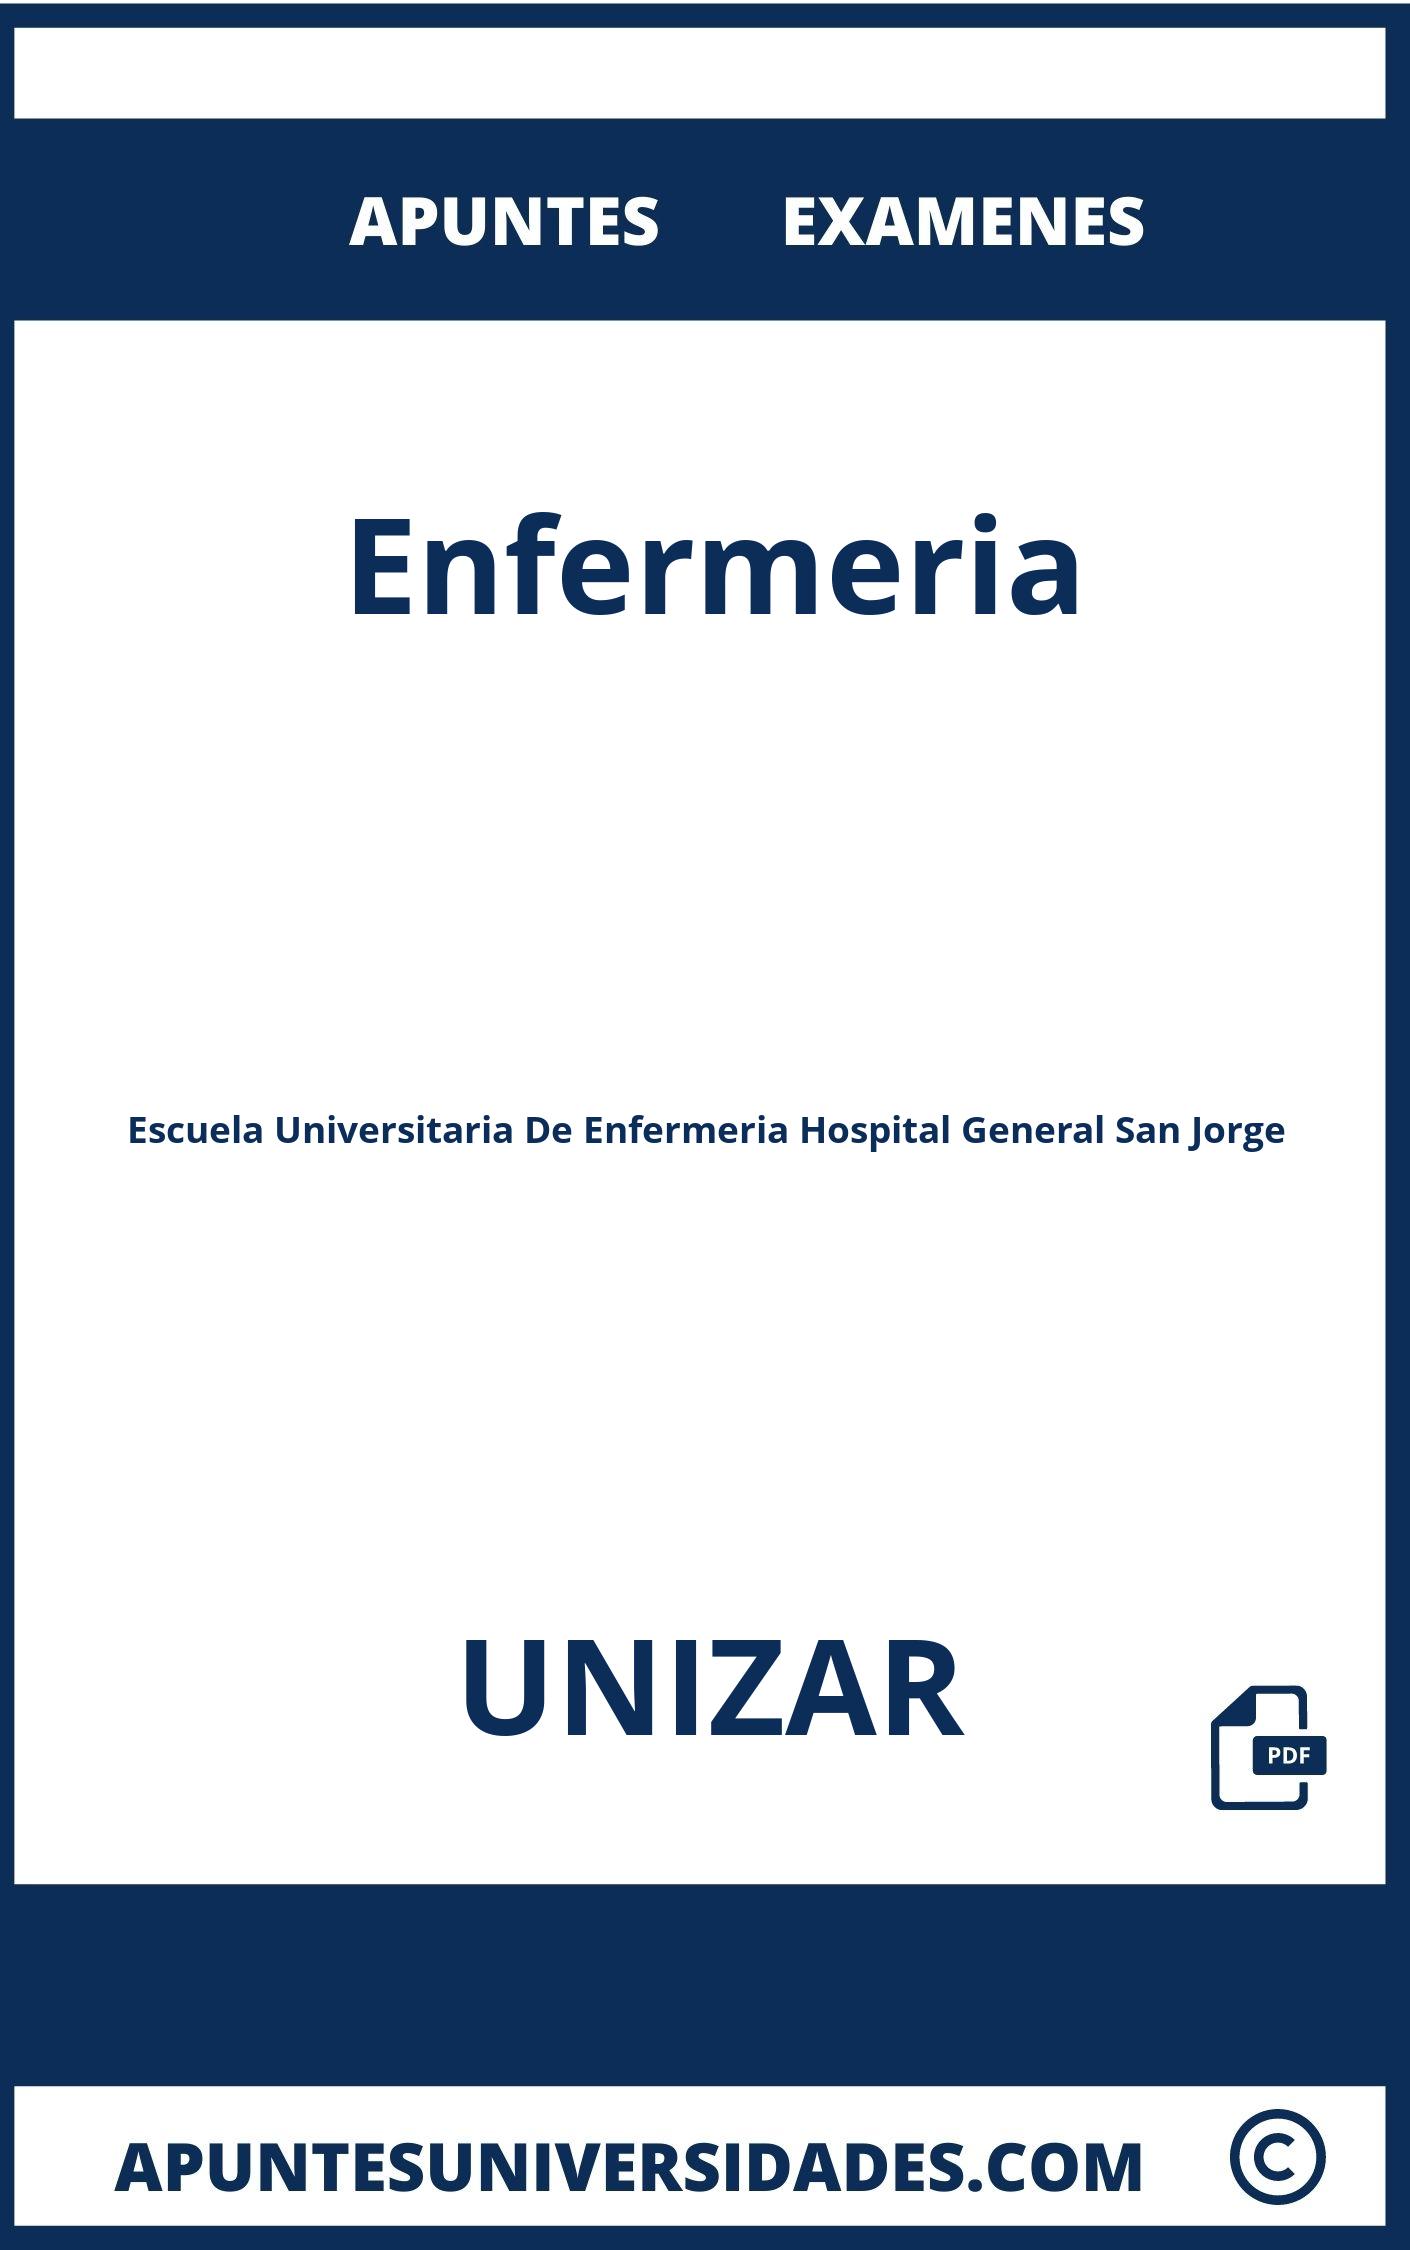 Enfermeria UNIZAR Examenes Apuntes